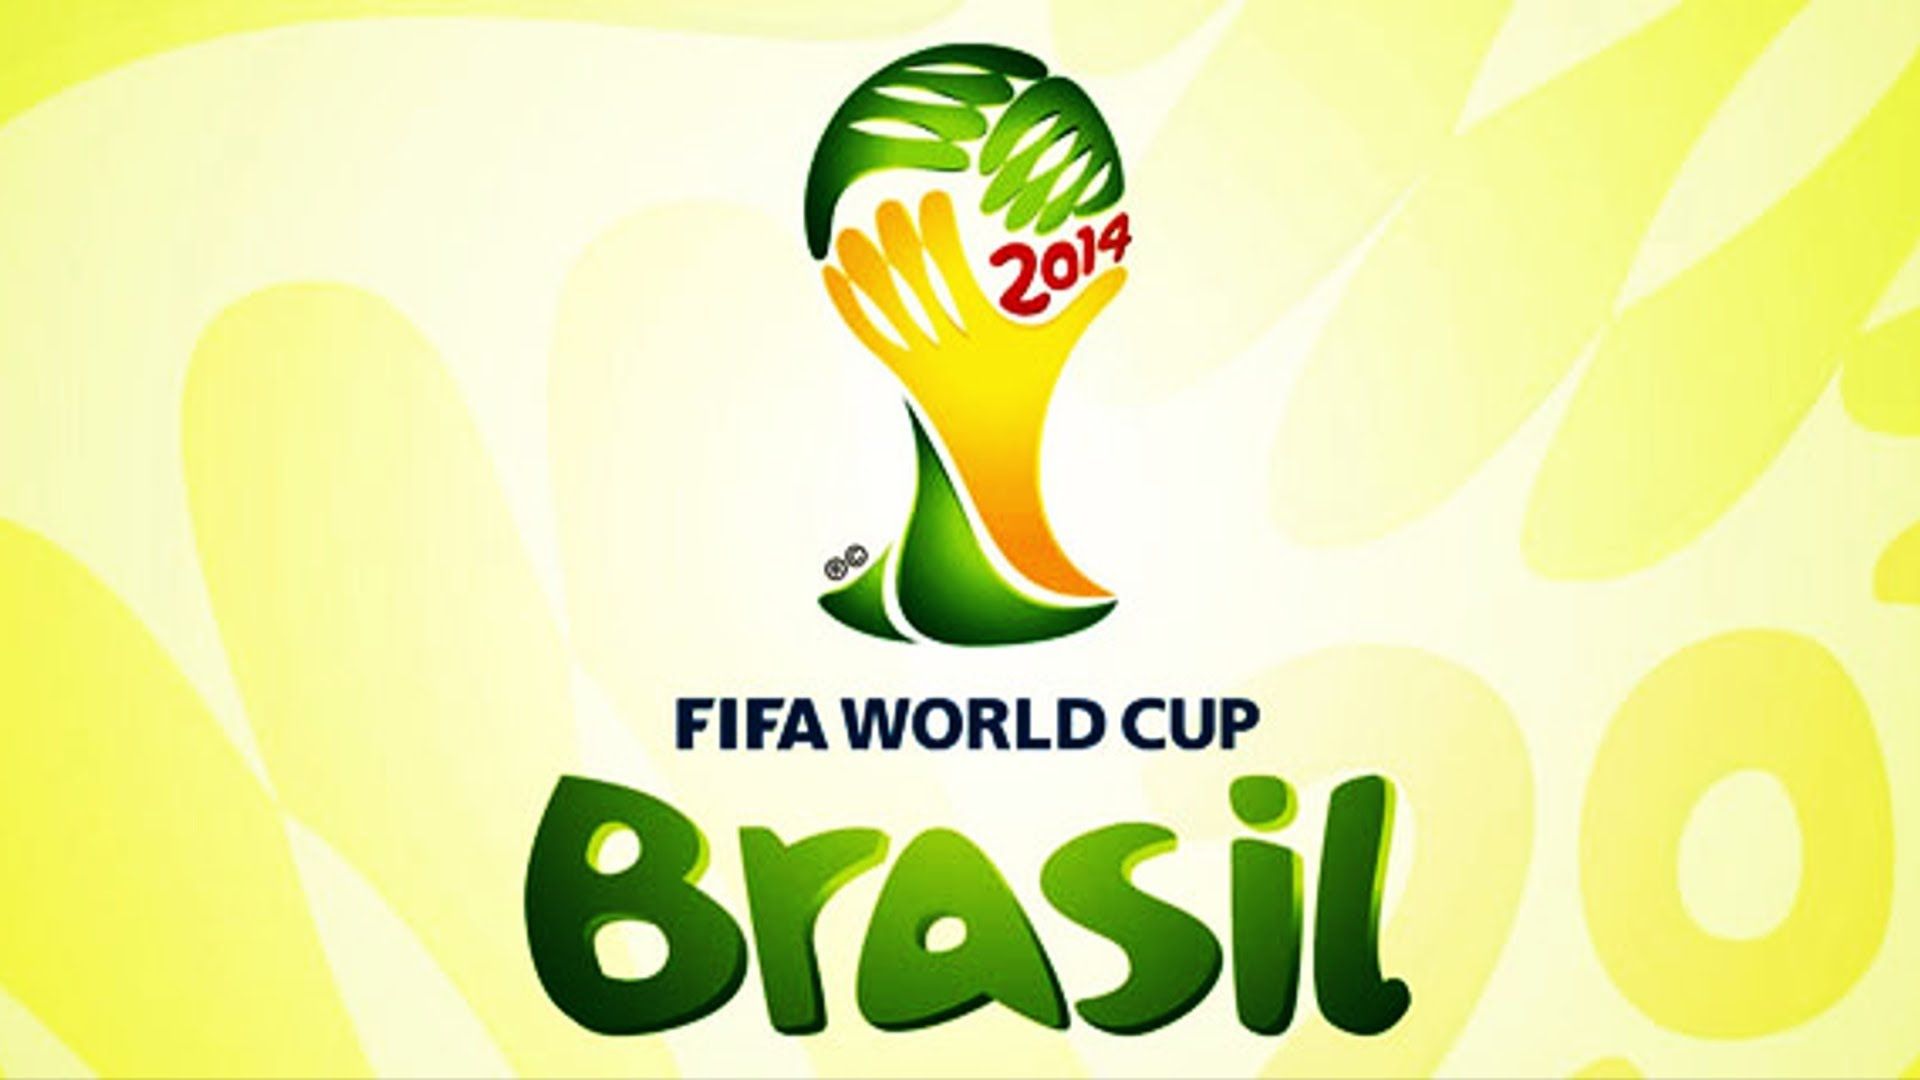 http://techbeasts.com/wp-content/uploads/2014/06/Fifa-World-Cup-2014-Brazil-Wallpaper.jpg